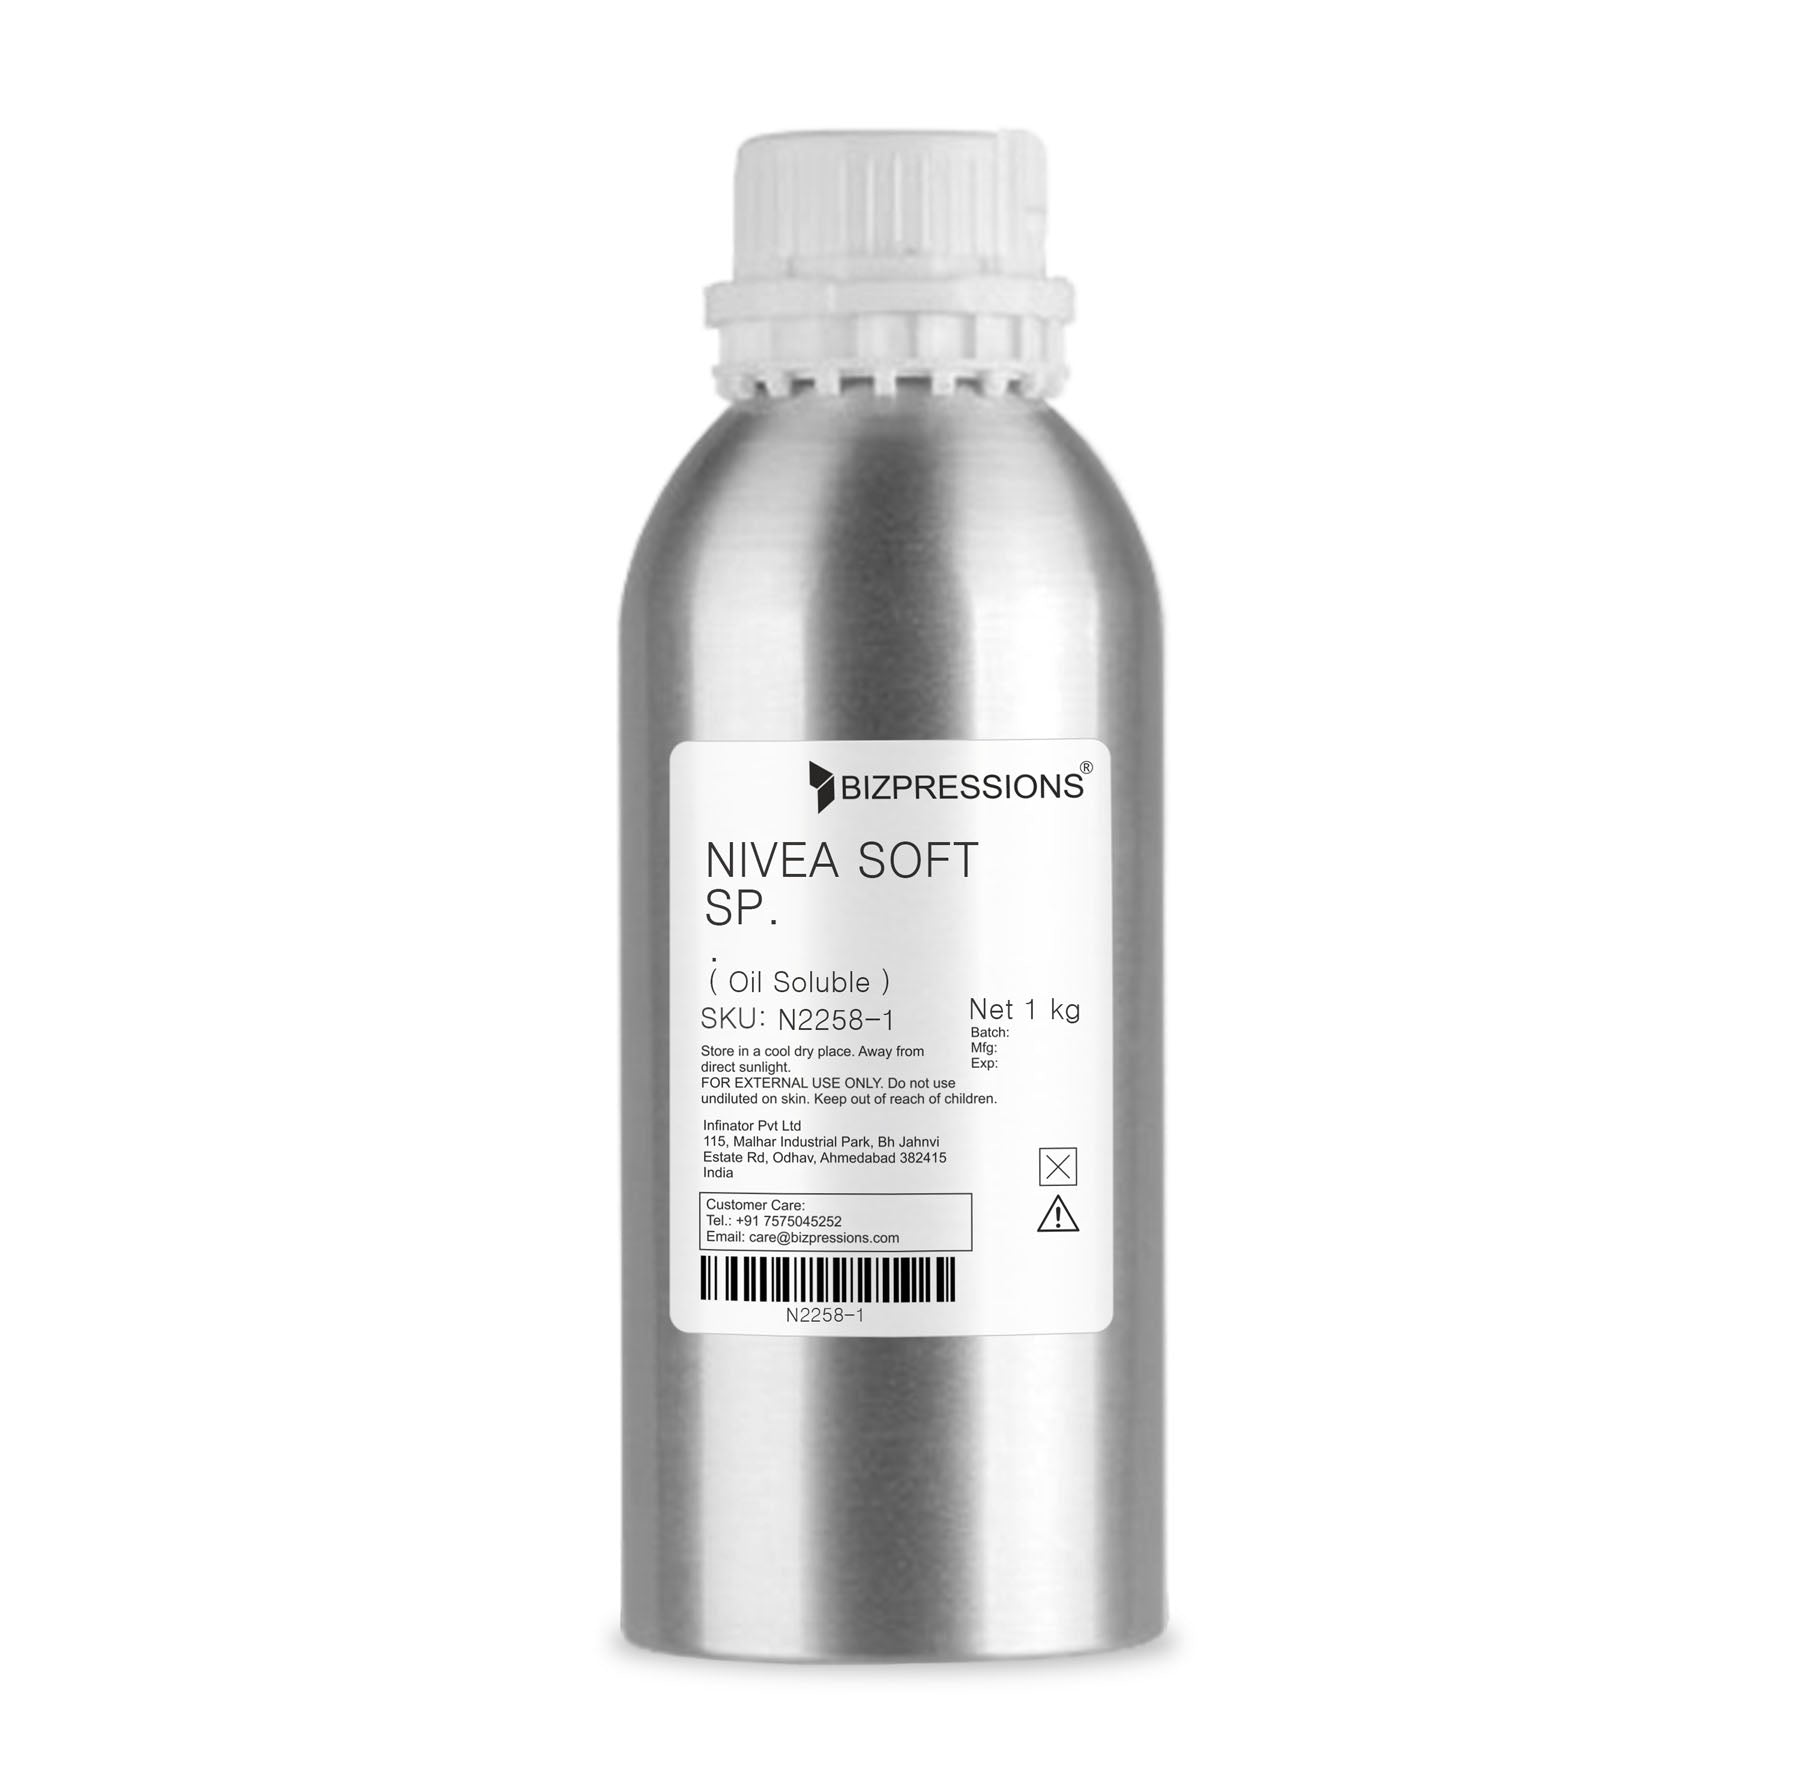 NIVEA SOFT SP. - Fragrance ( Oil Soluble ) - 1 kg